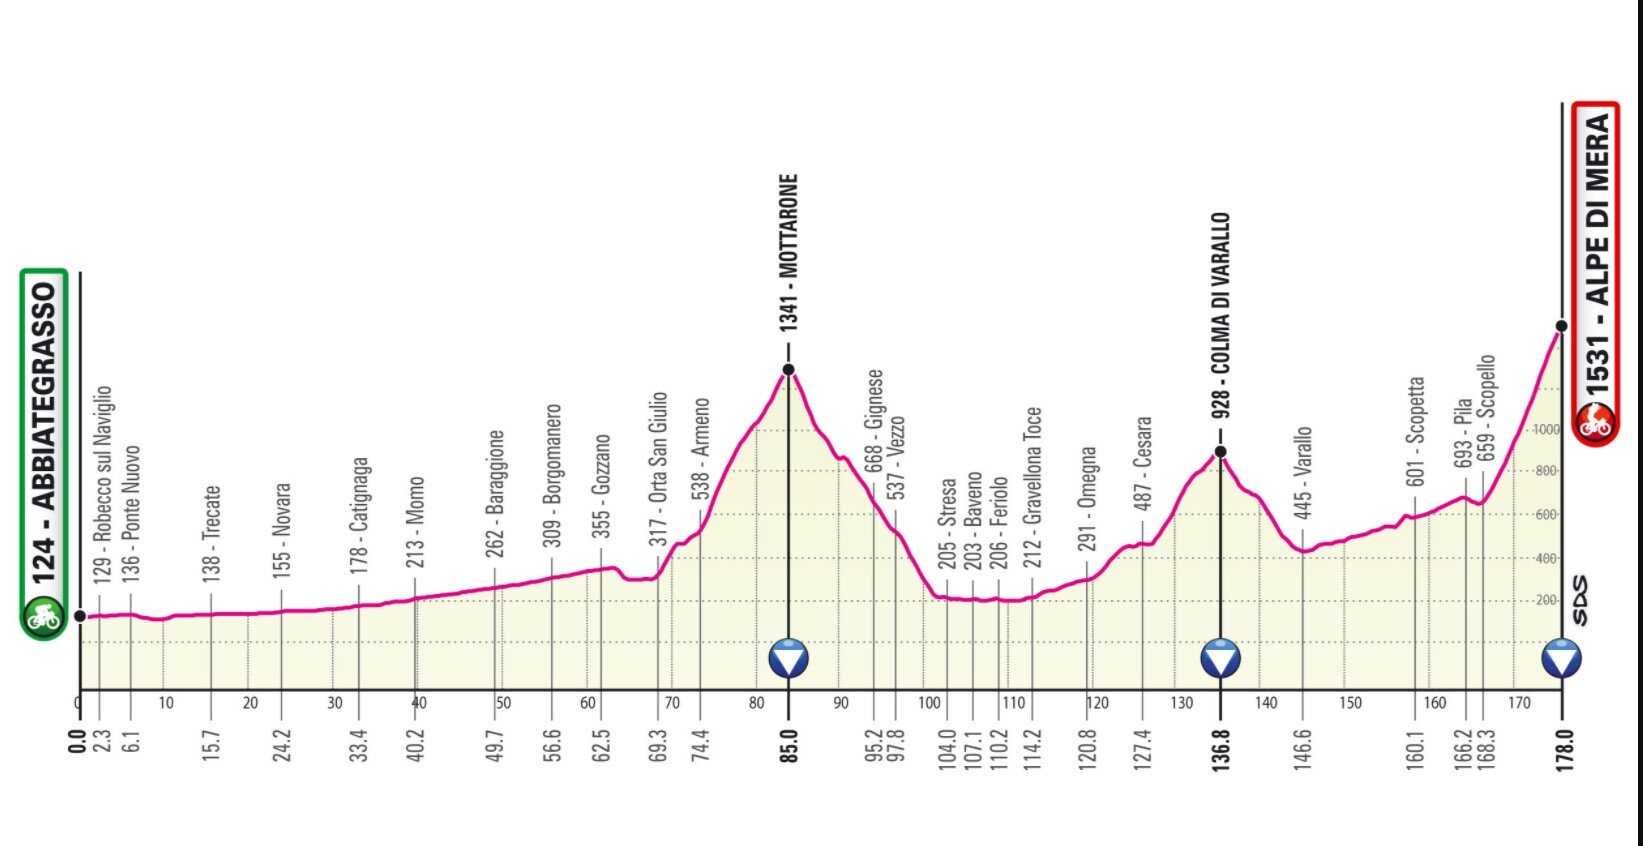 Etapa 19 Giro Italia 2021